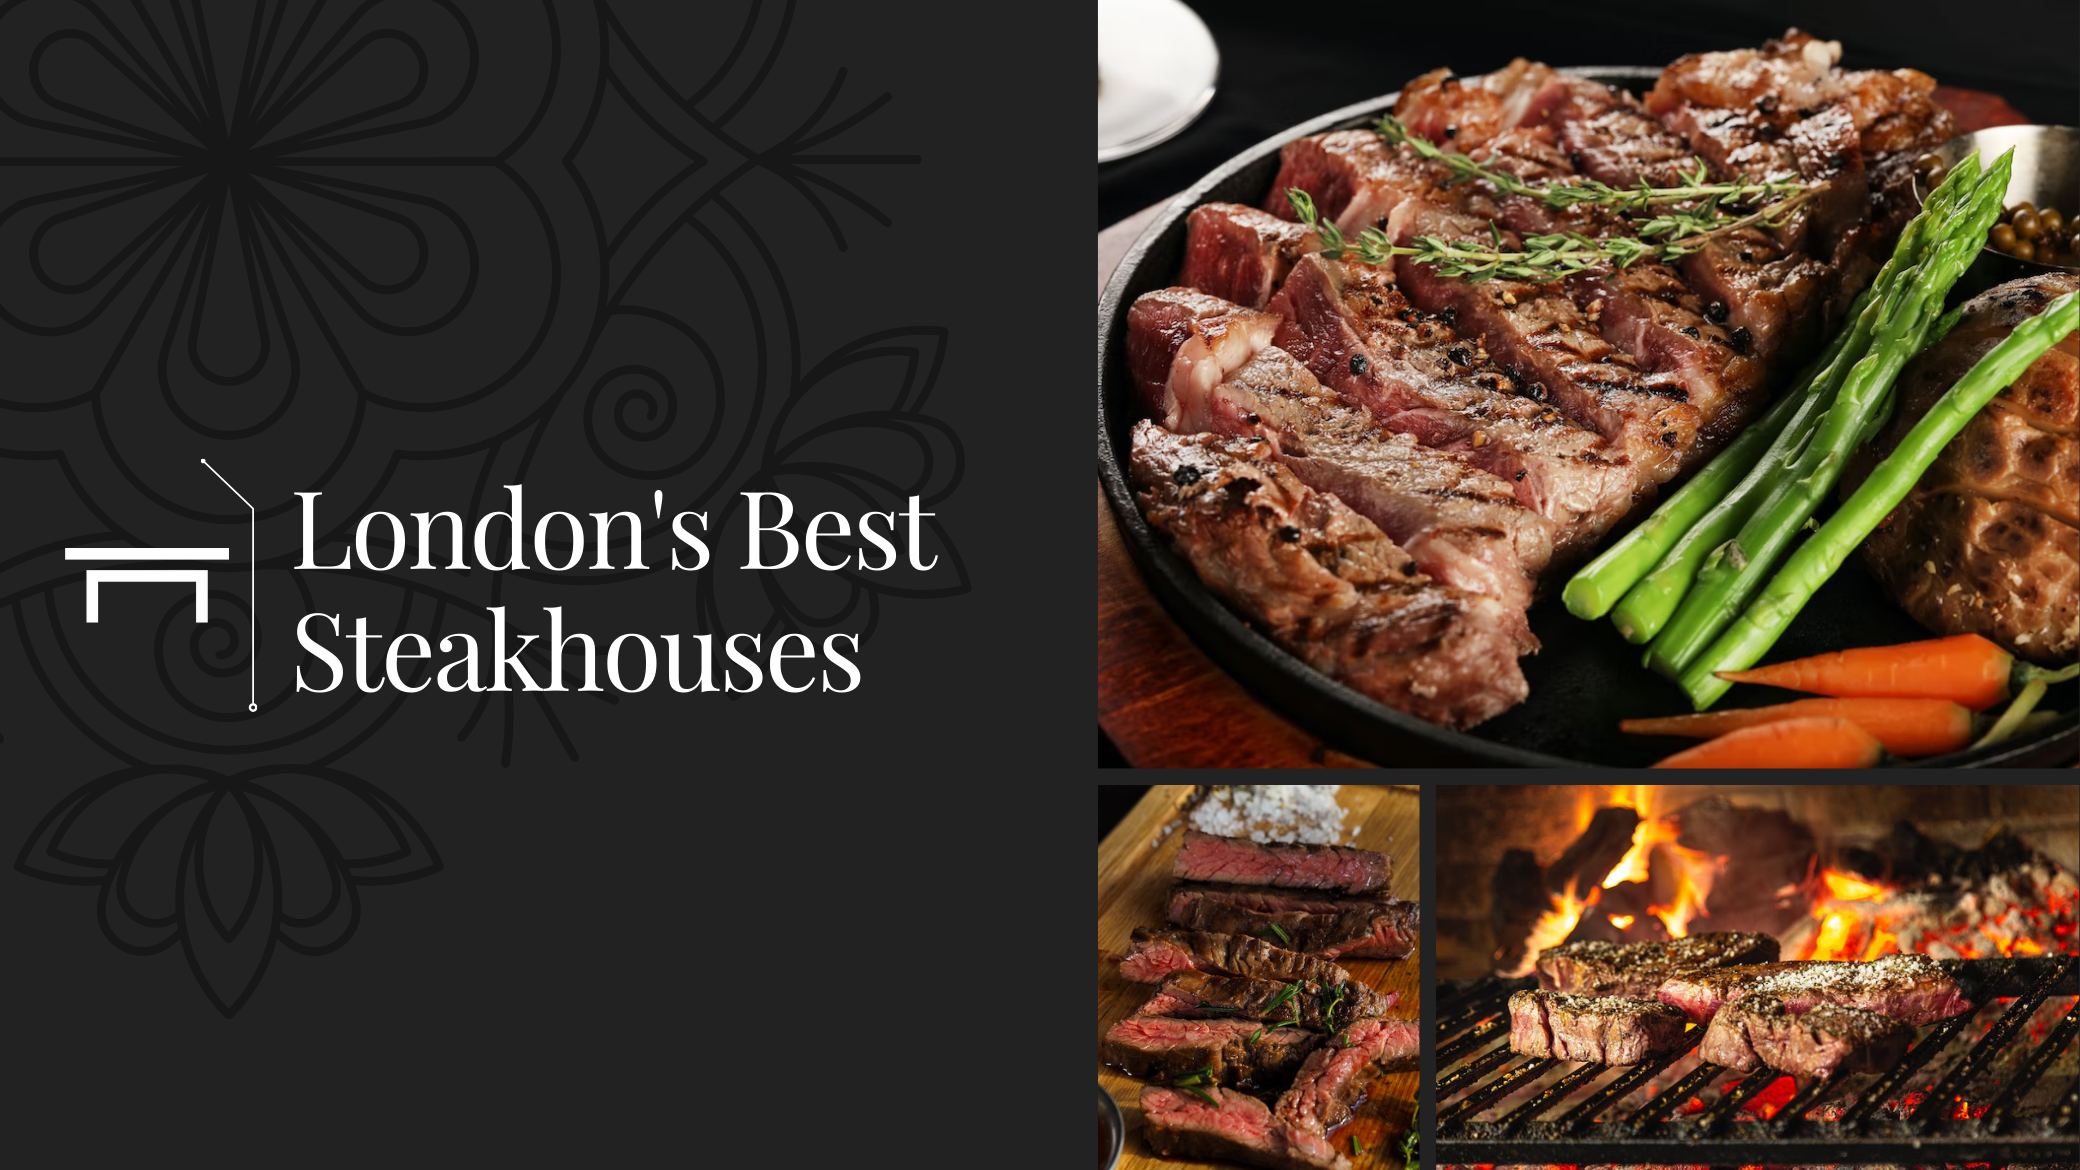 London's Best Steakhouses